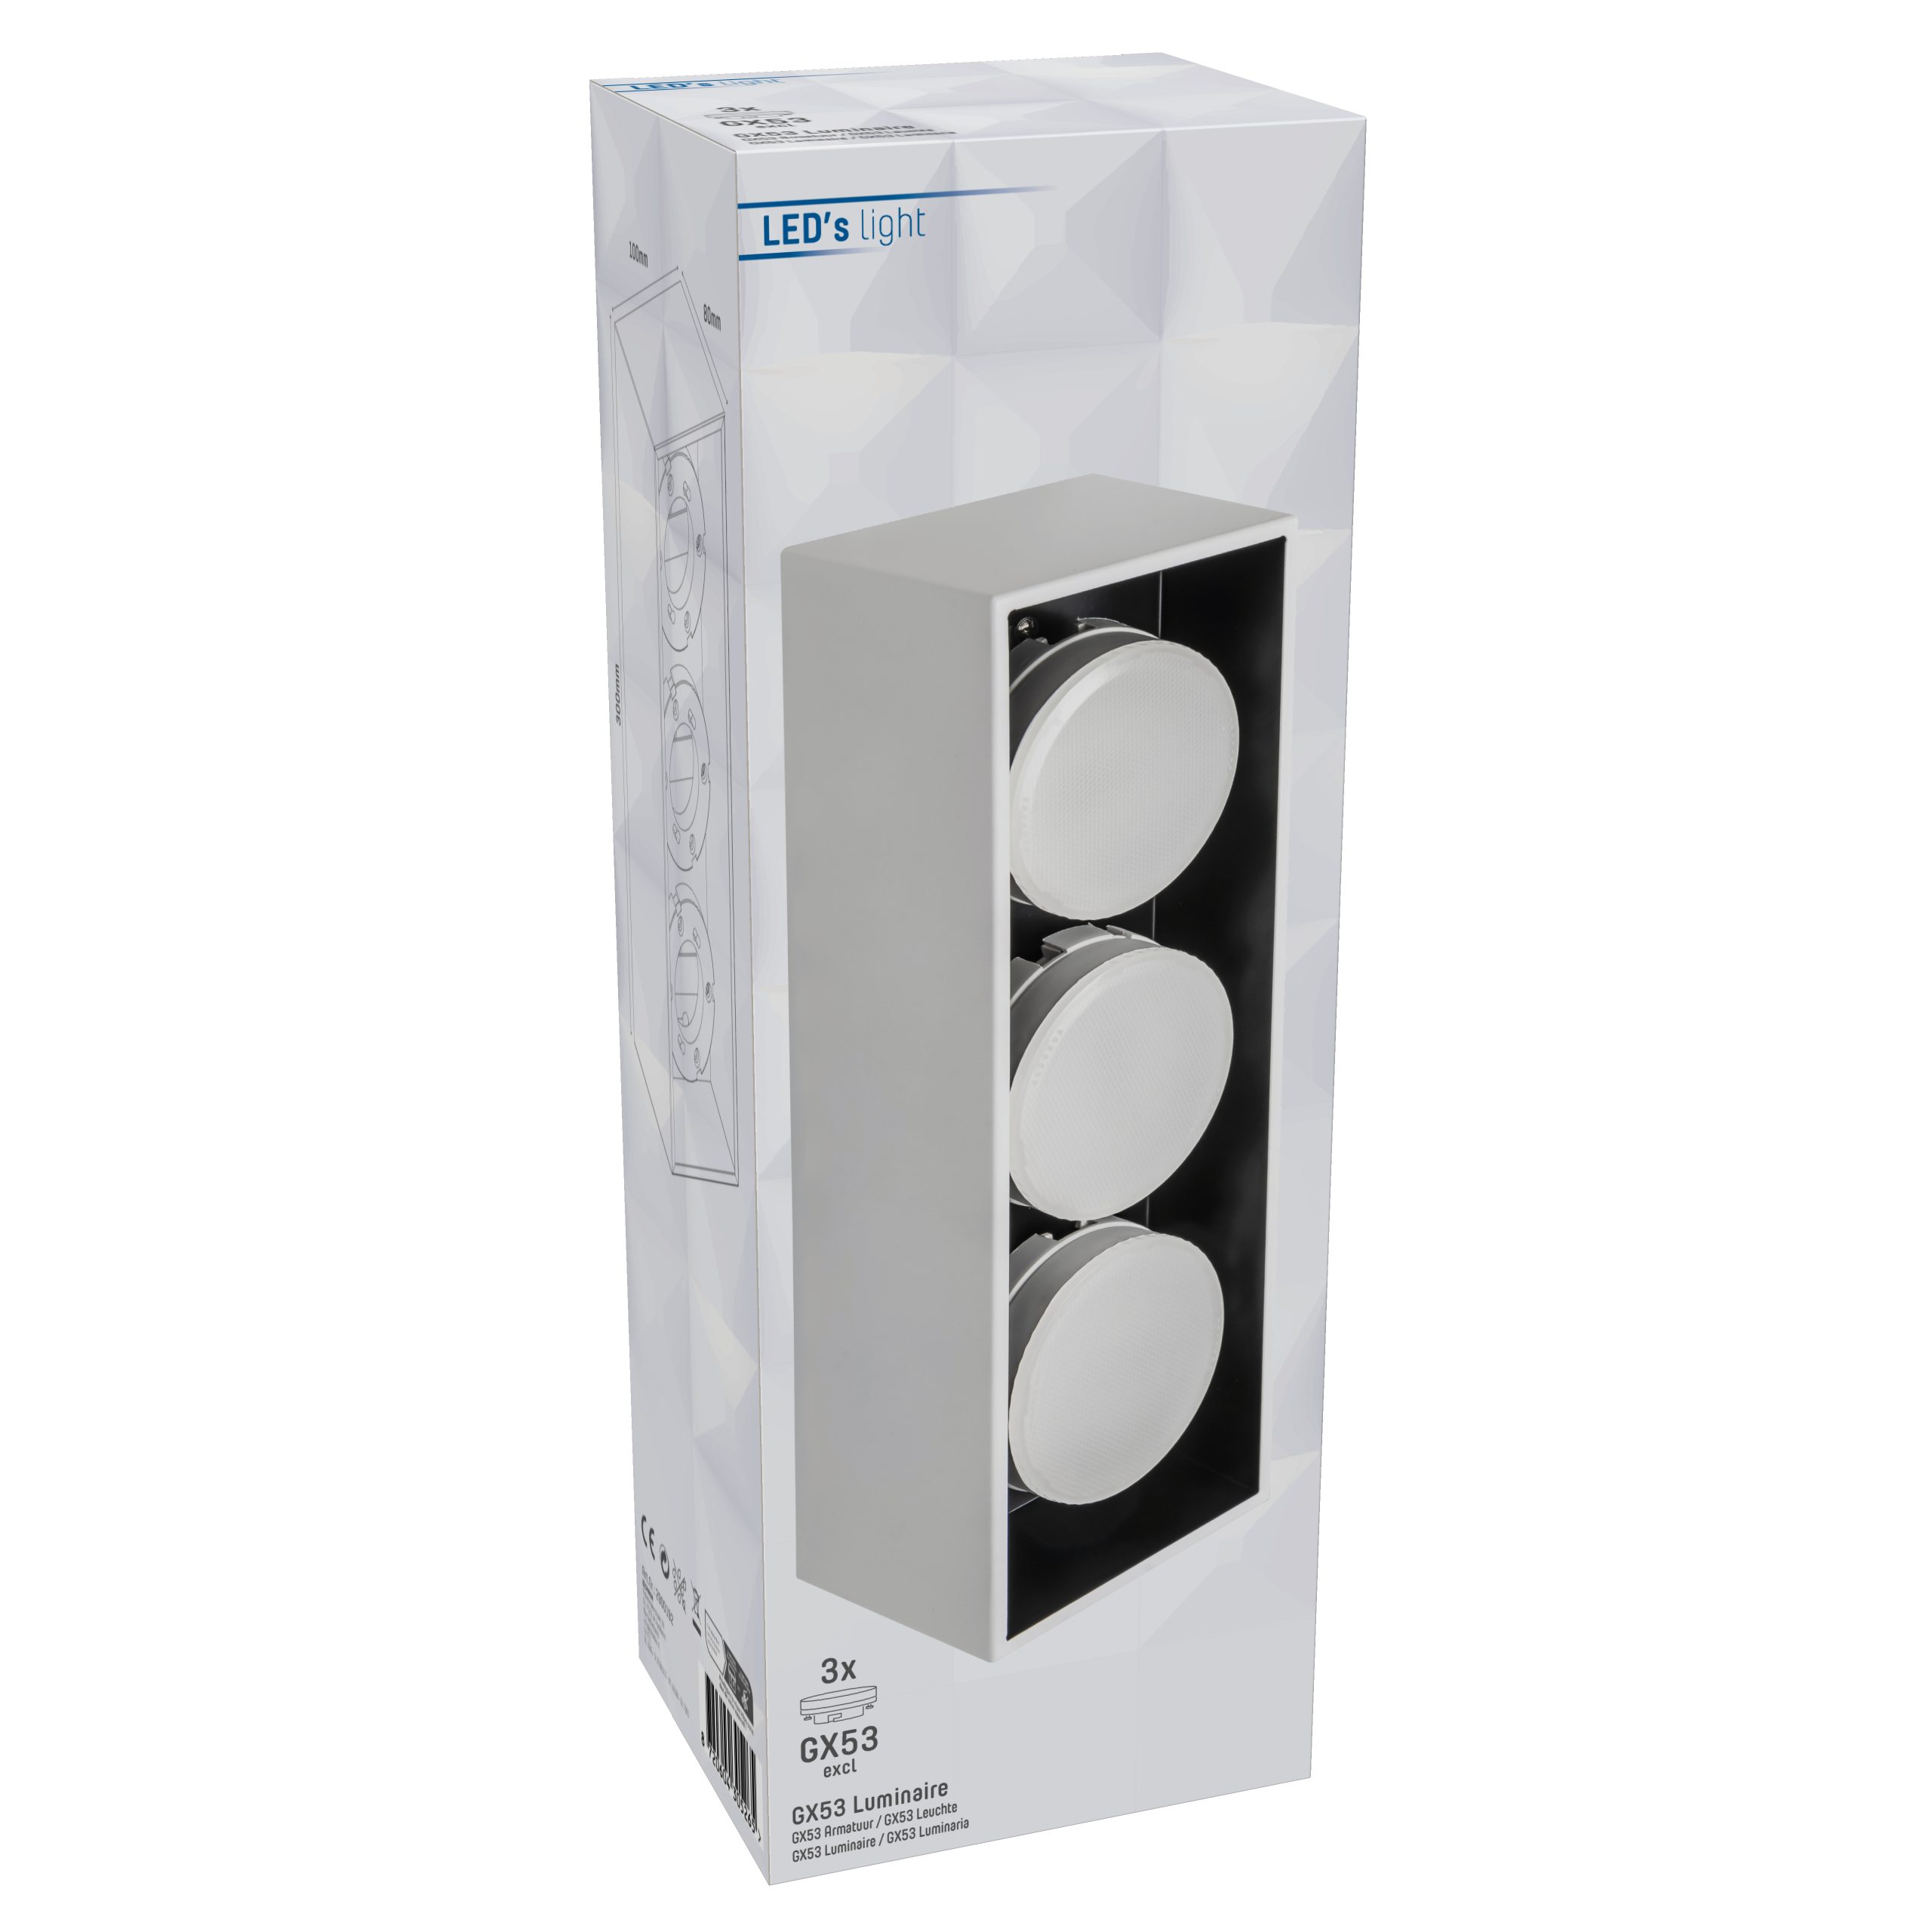 LED, bis weiß LED 2900192 light 3x LED's GX53 12W Deckenleuchte, Deckenleuchte